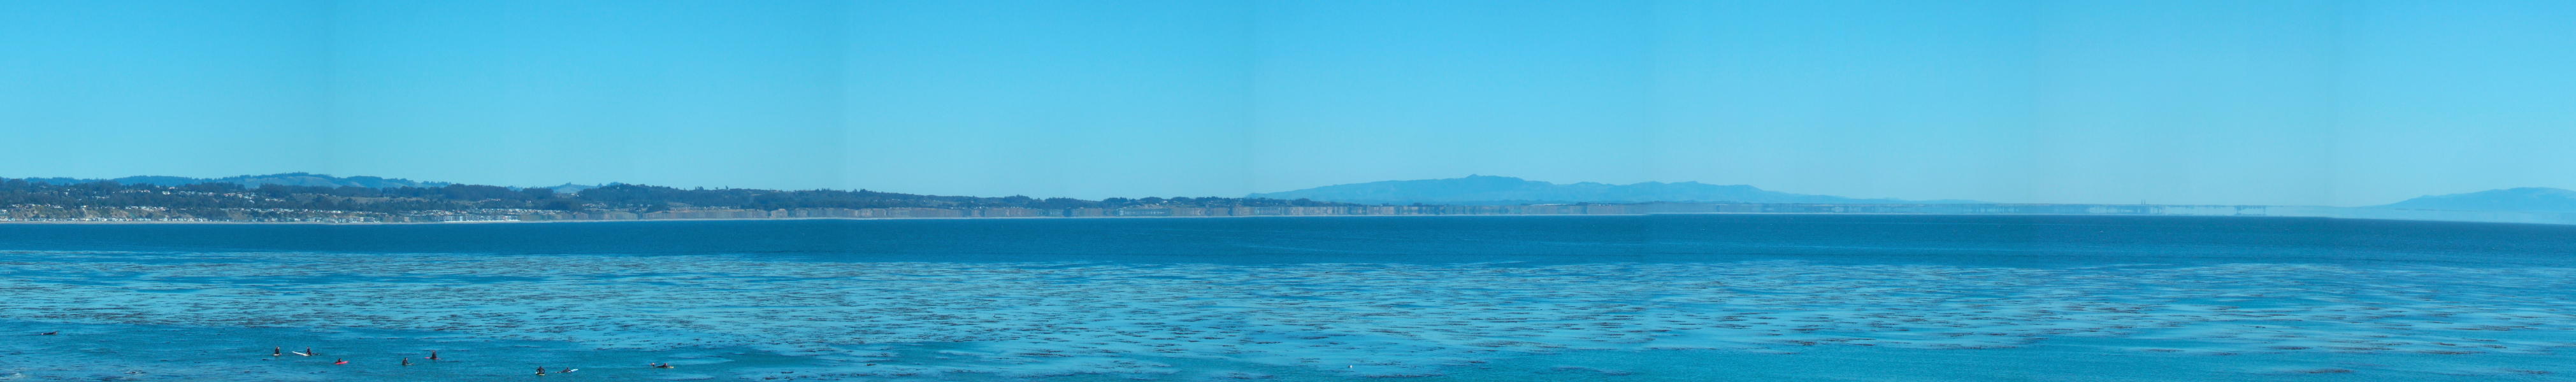 Illusory cliffs along the coast of Santa Cruz County